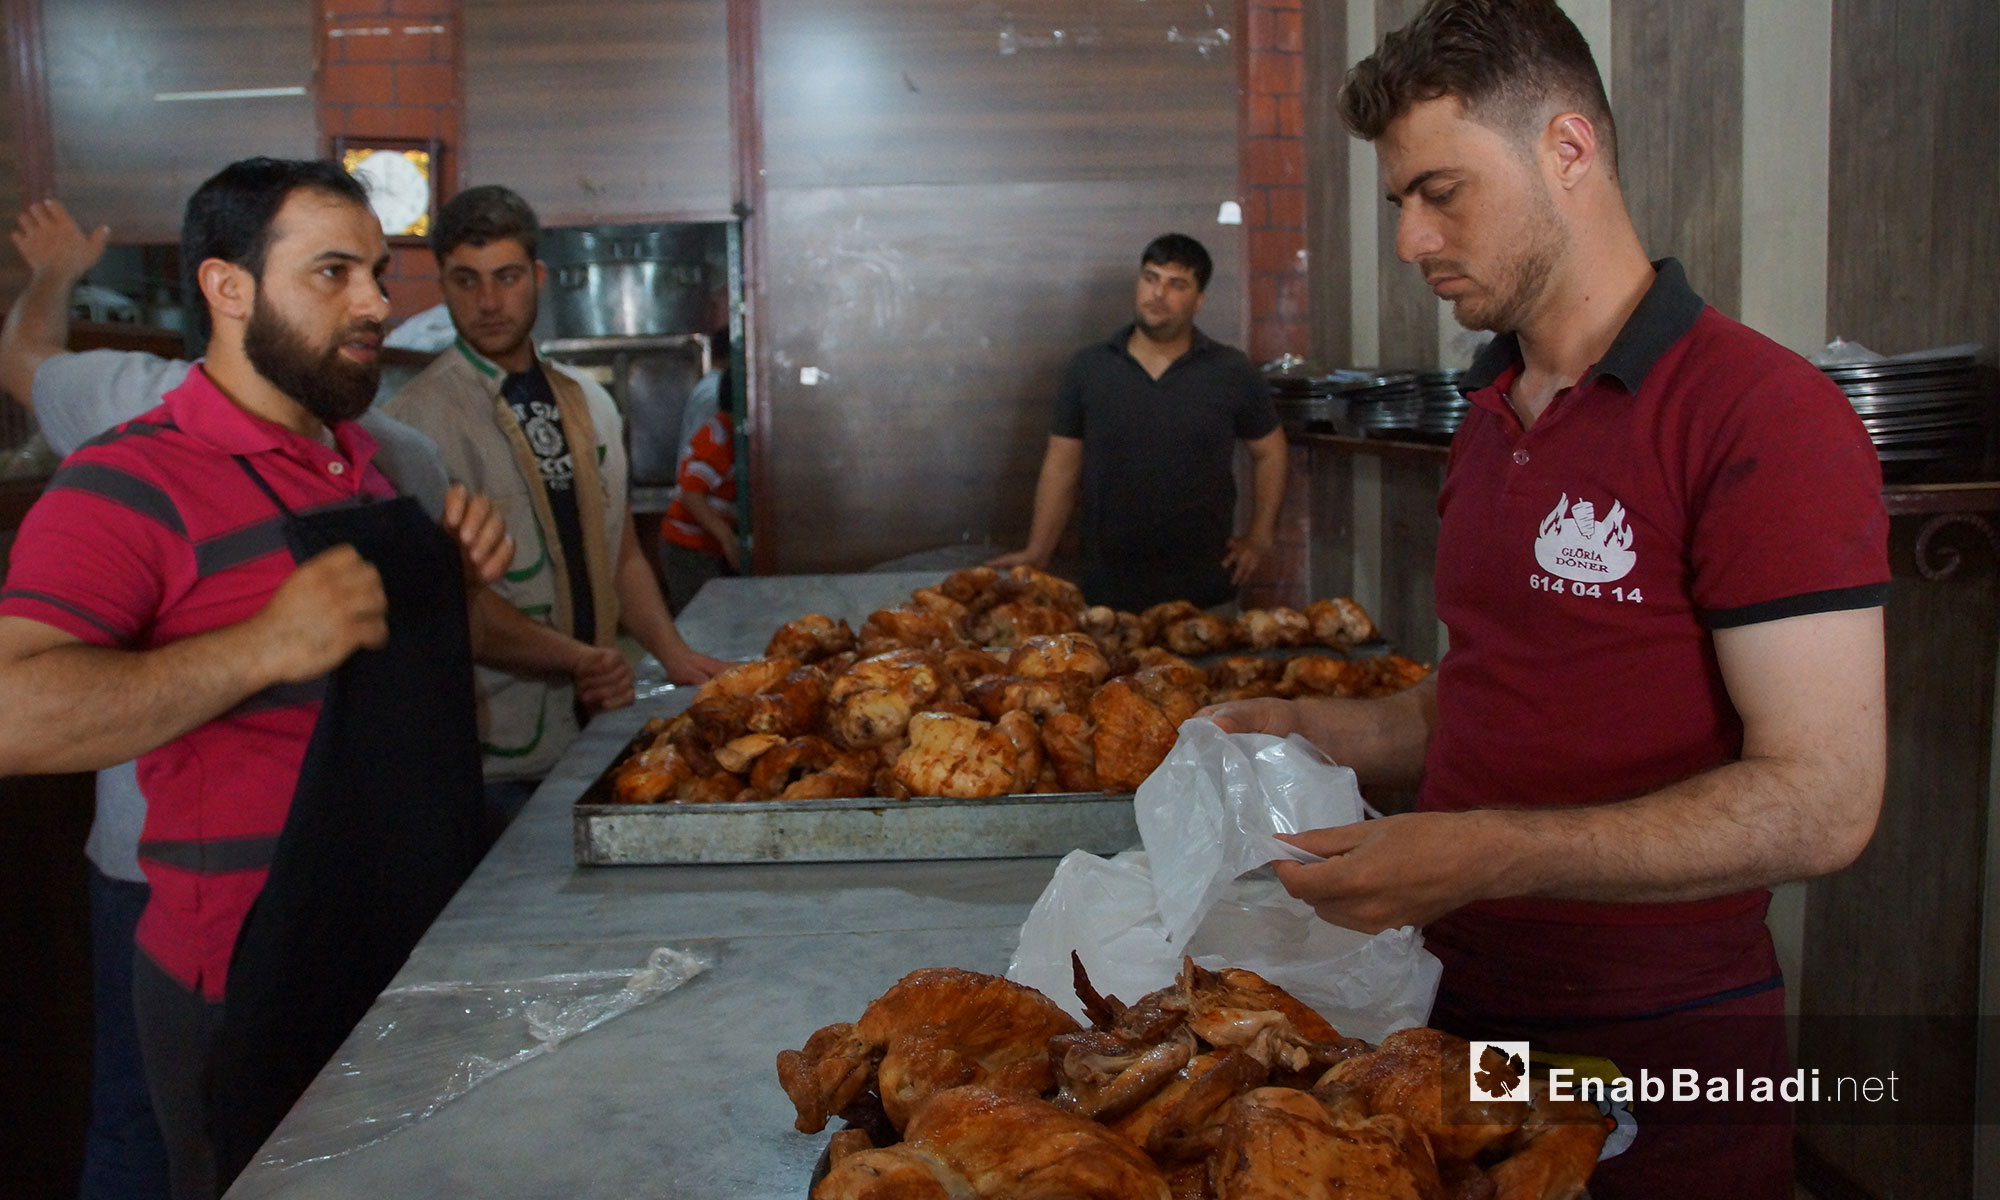 تجهيز وجبات الإفطار لتوزيعها على نازحي أرياف حماة وباقي المحافظات من مبطخ رمضان في ريف حماة - 18 أيار 2018 (عنب بلدي)